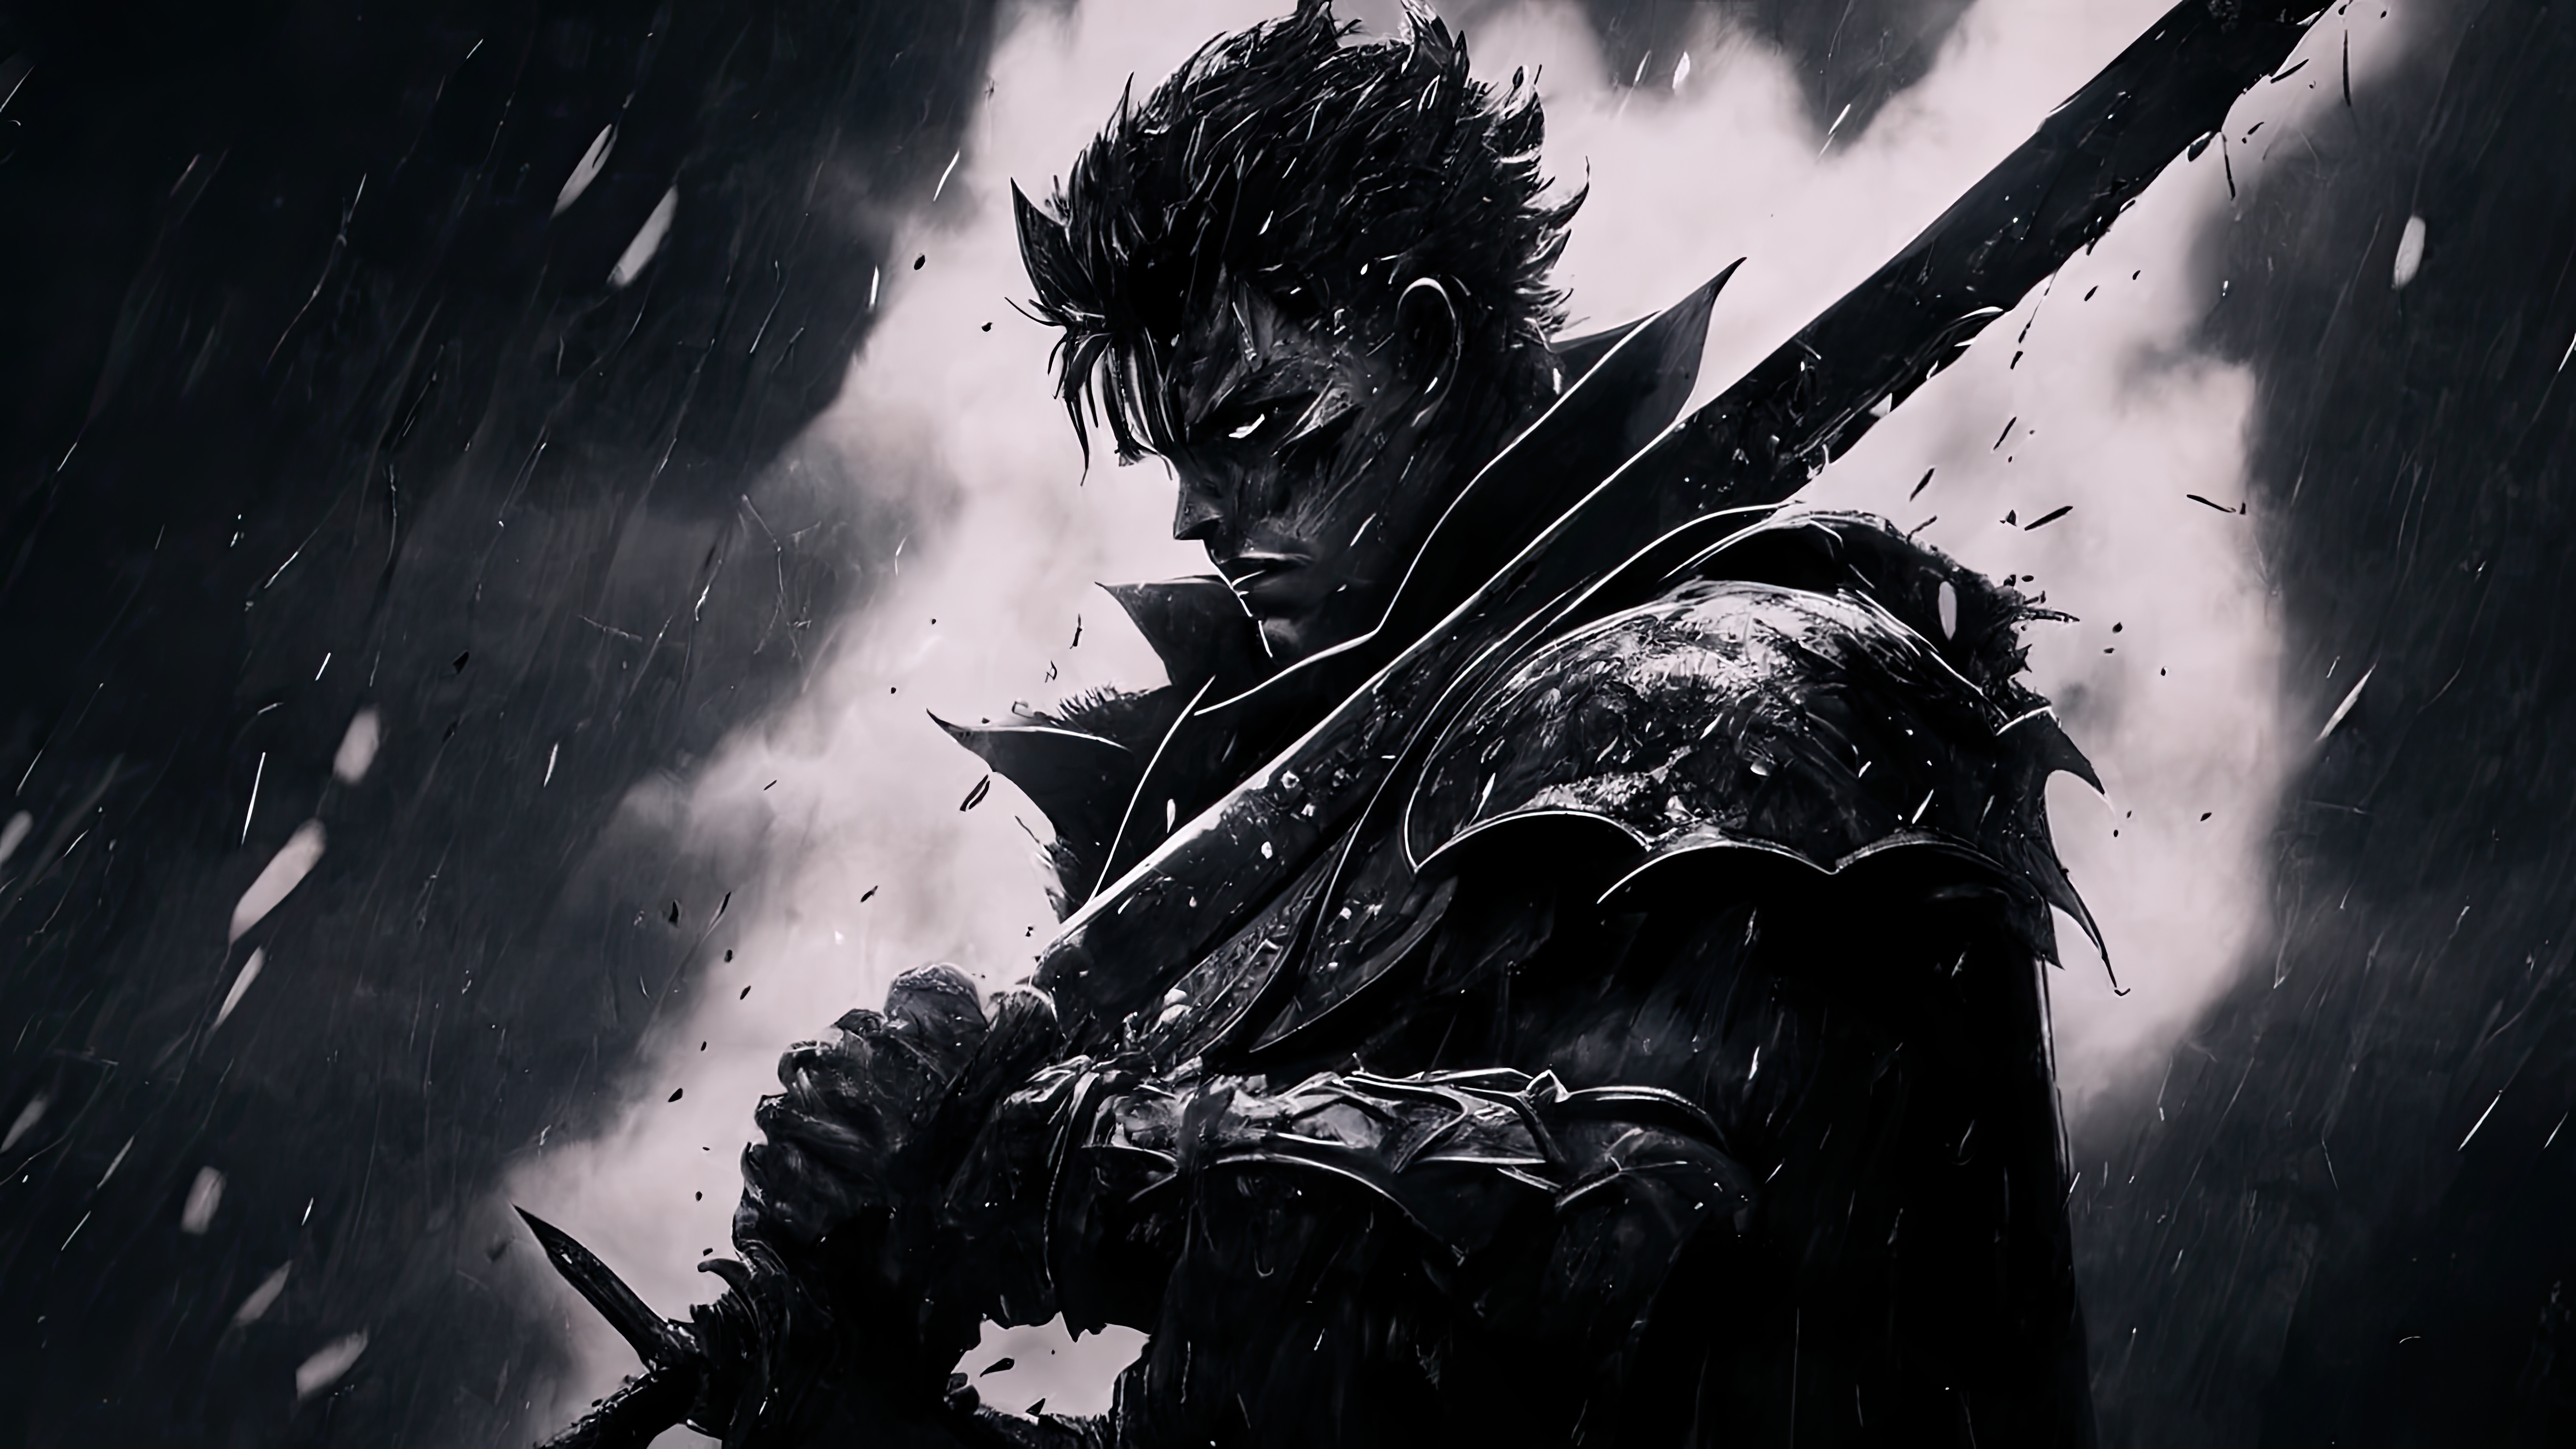 Anime 8192x4608 Guts Berserk berserk armor anime men rain looking at viewer armor sword